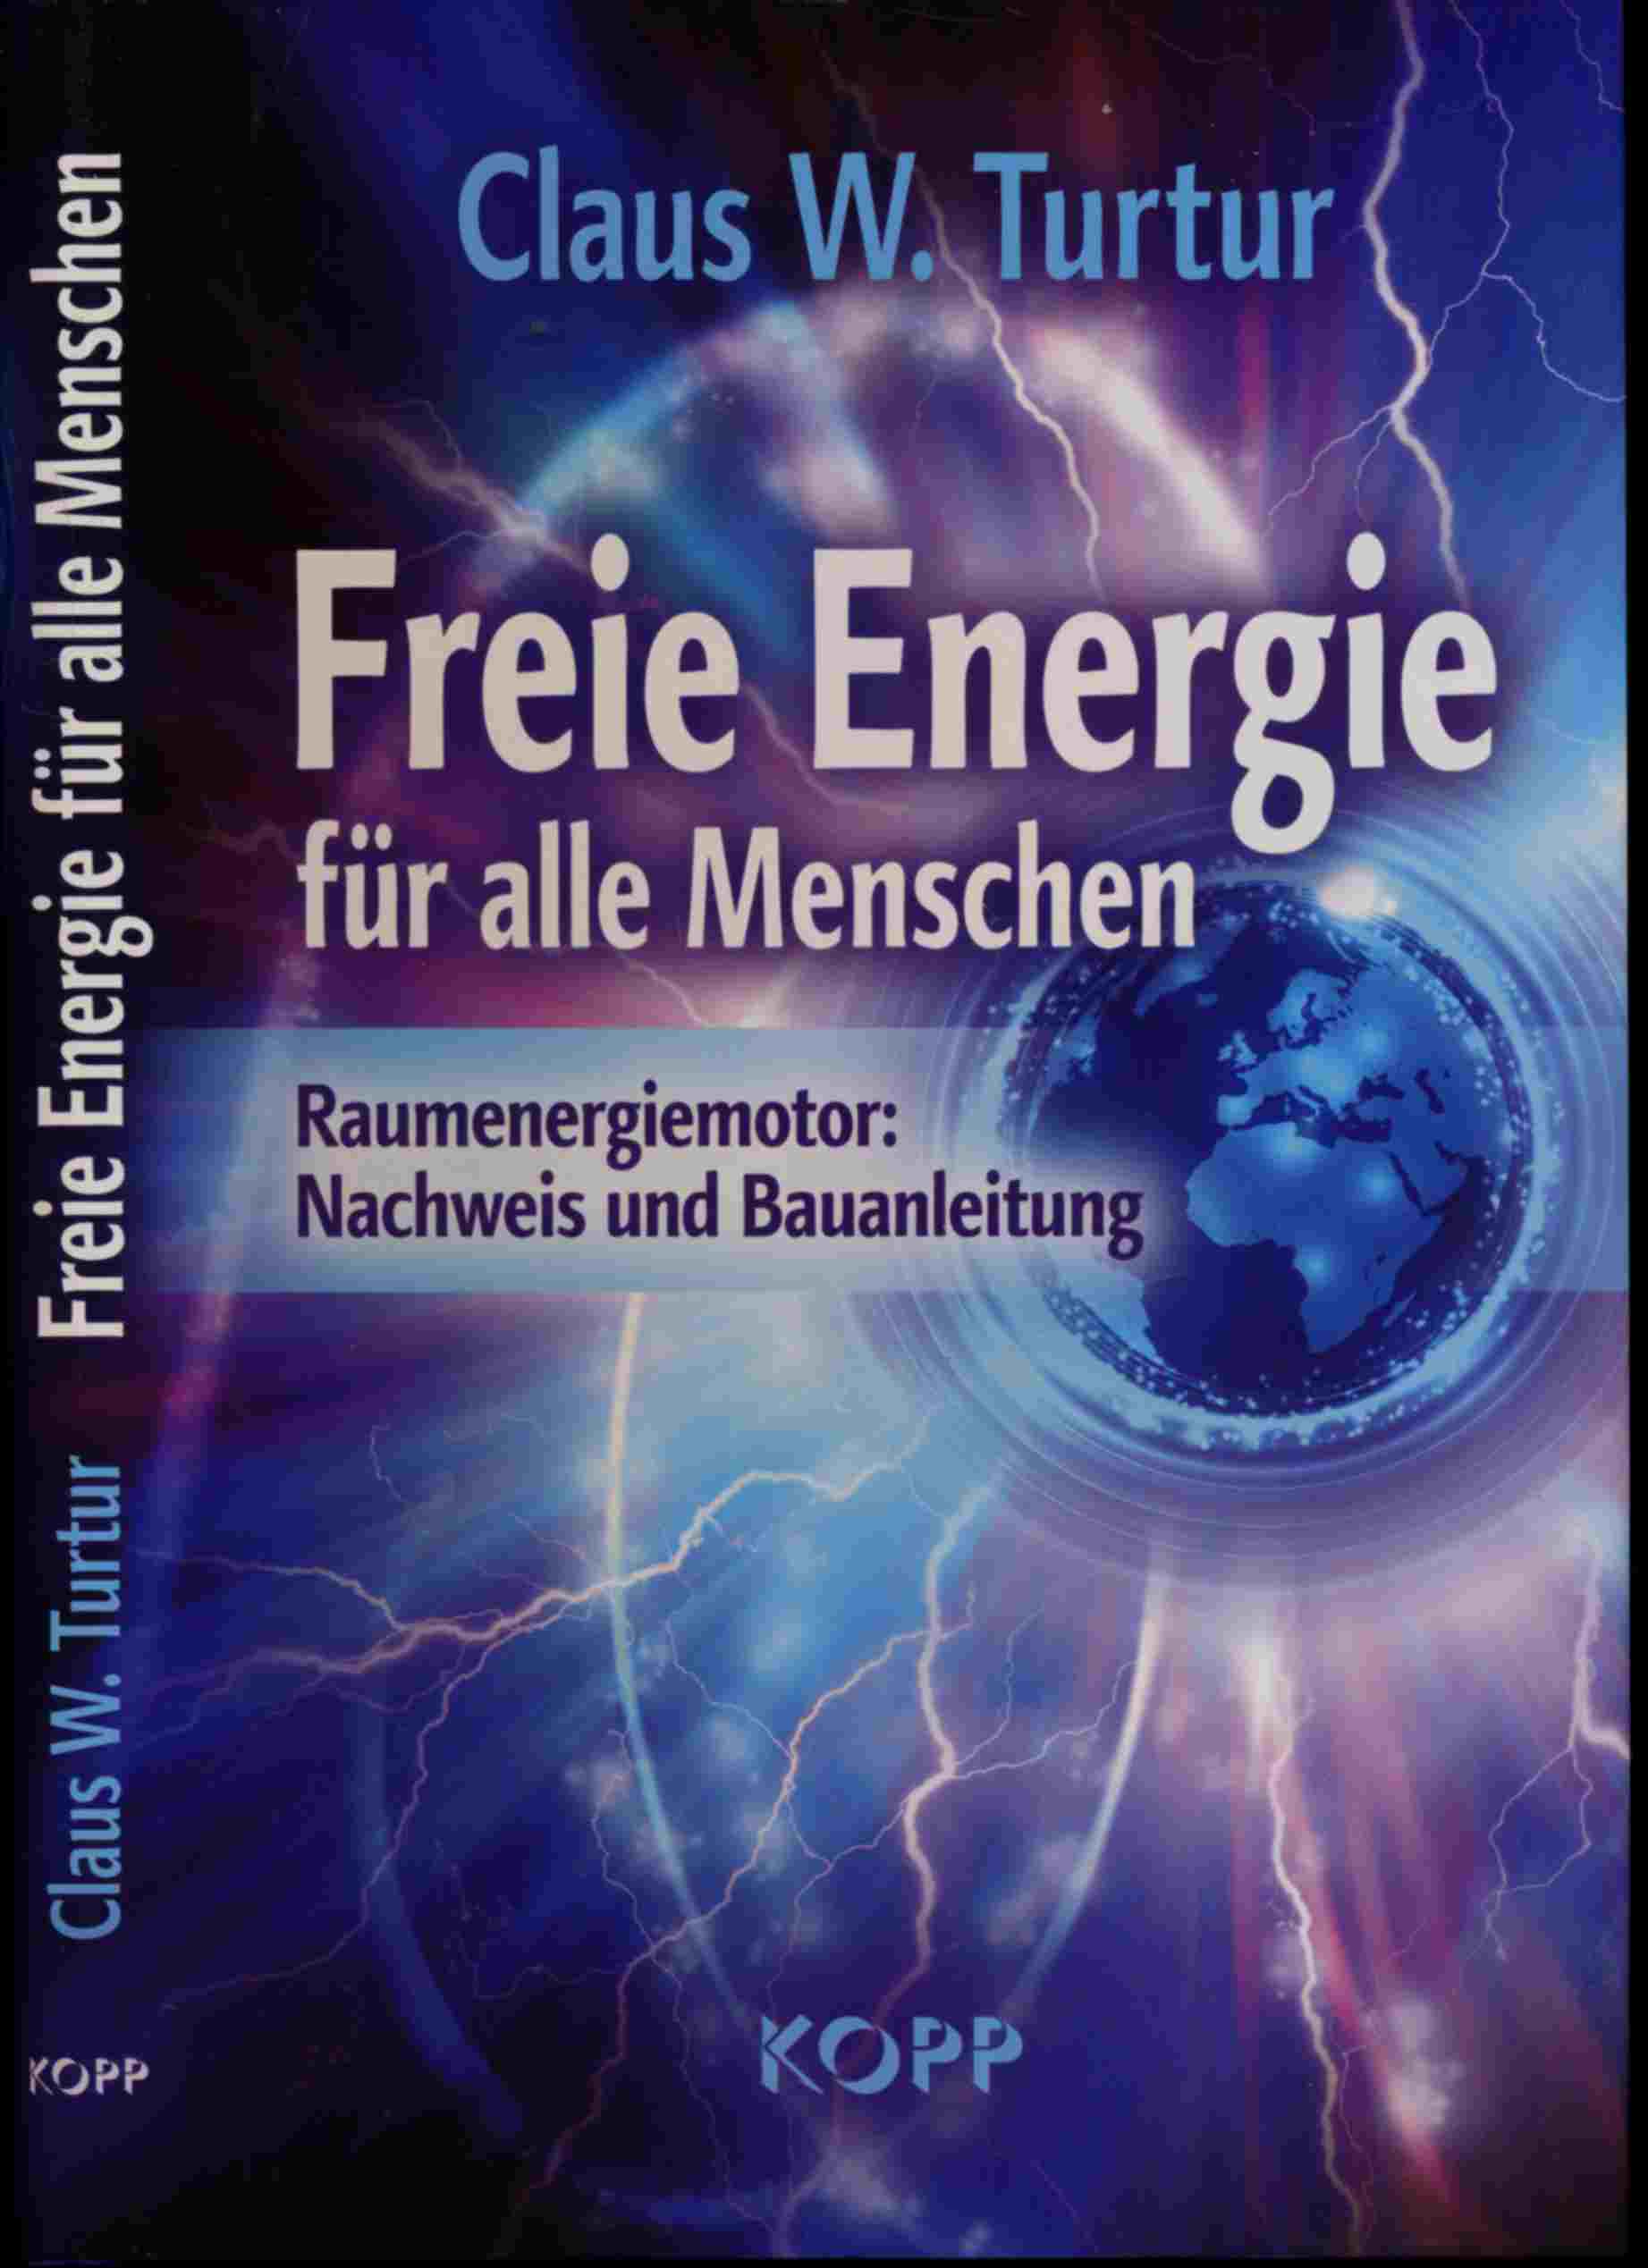 TURTURClaus W.  Freie Energie für alle Menschen. Raumenergiemotor: Nachweis und Bauanleitung. 